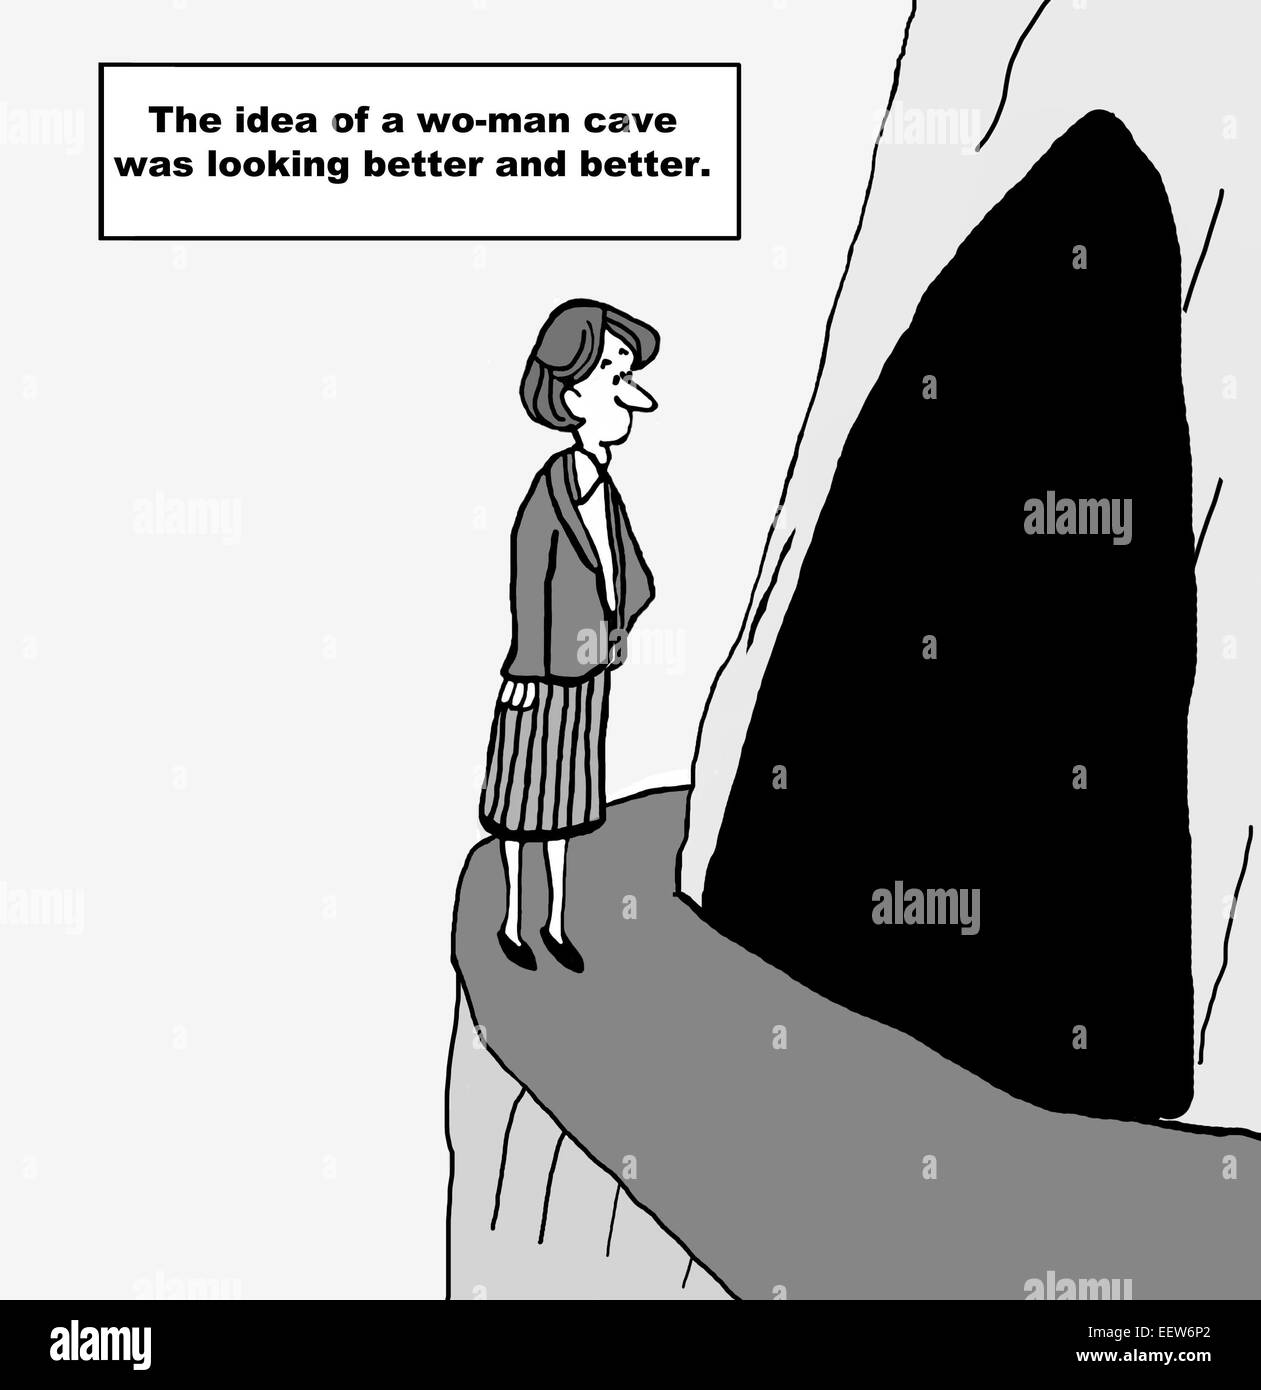 Karikatur von einer Frau in einer Höhle suchen und dachte die Idee einer Frau Höhle ist suchen Sie besser und besser. Stockfoto